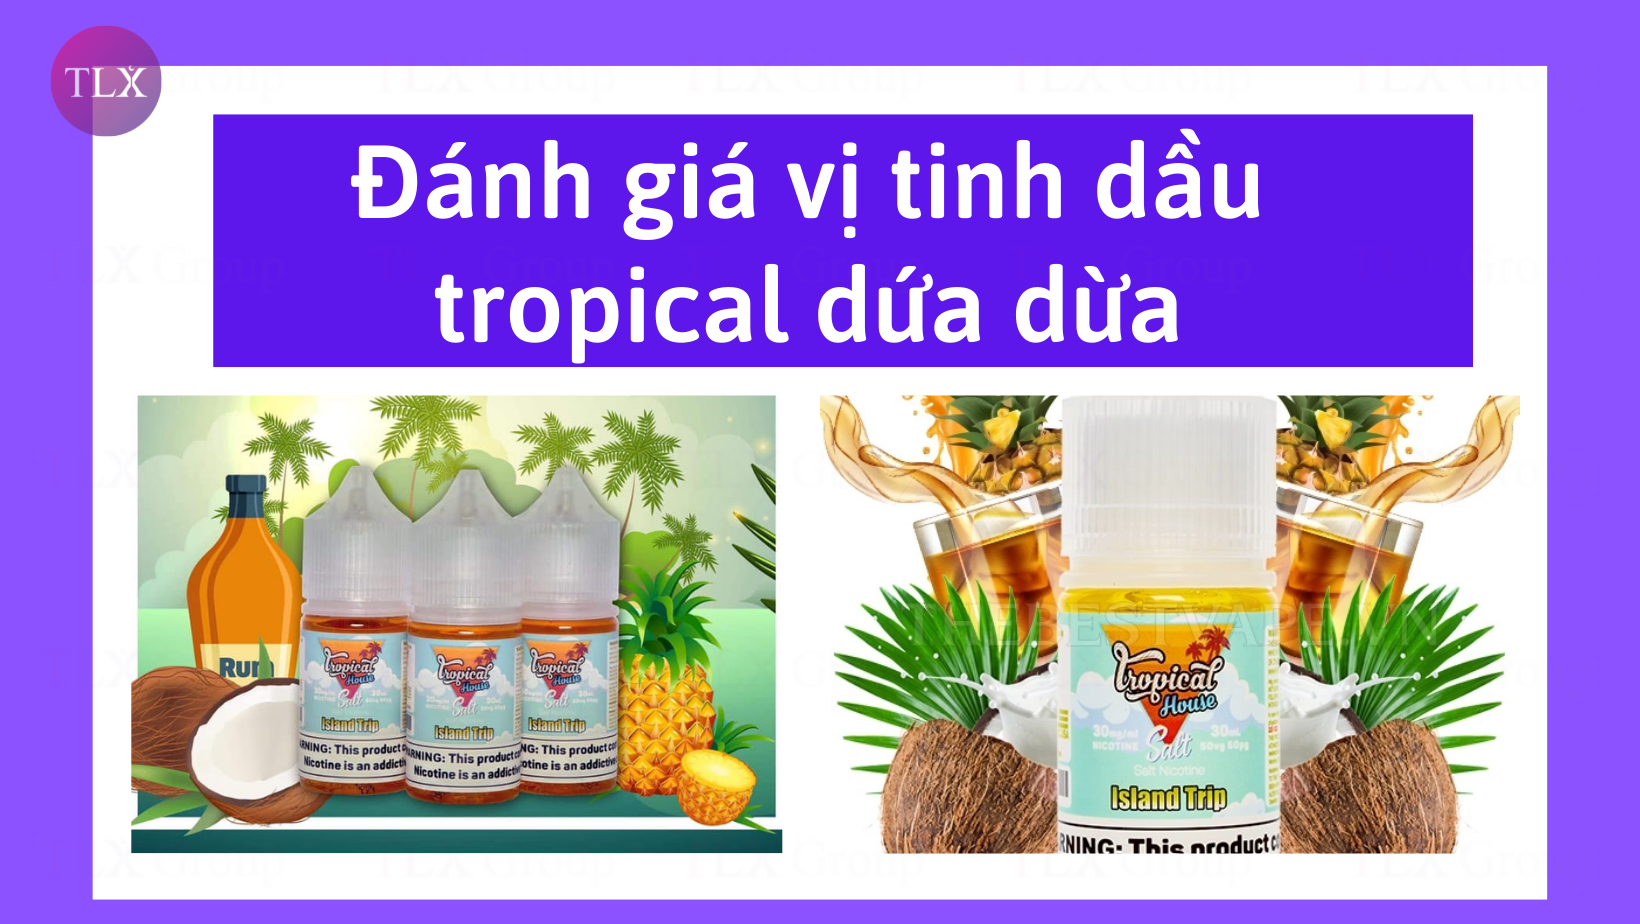 Đánh giá vị tinh dầu tropical dứa dừa mang dấu ấn vùng nhiệt đới